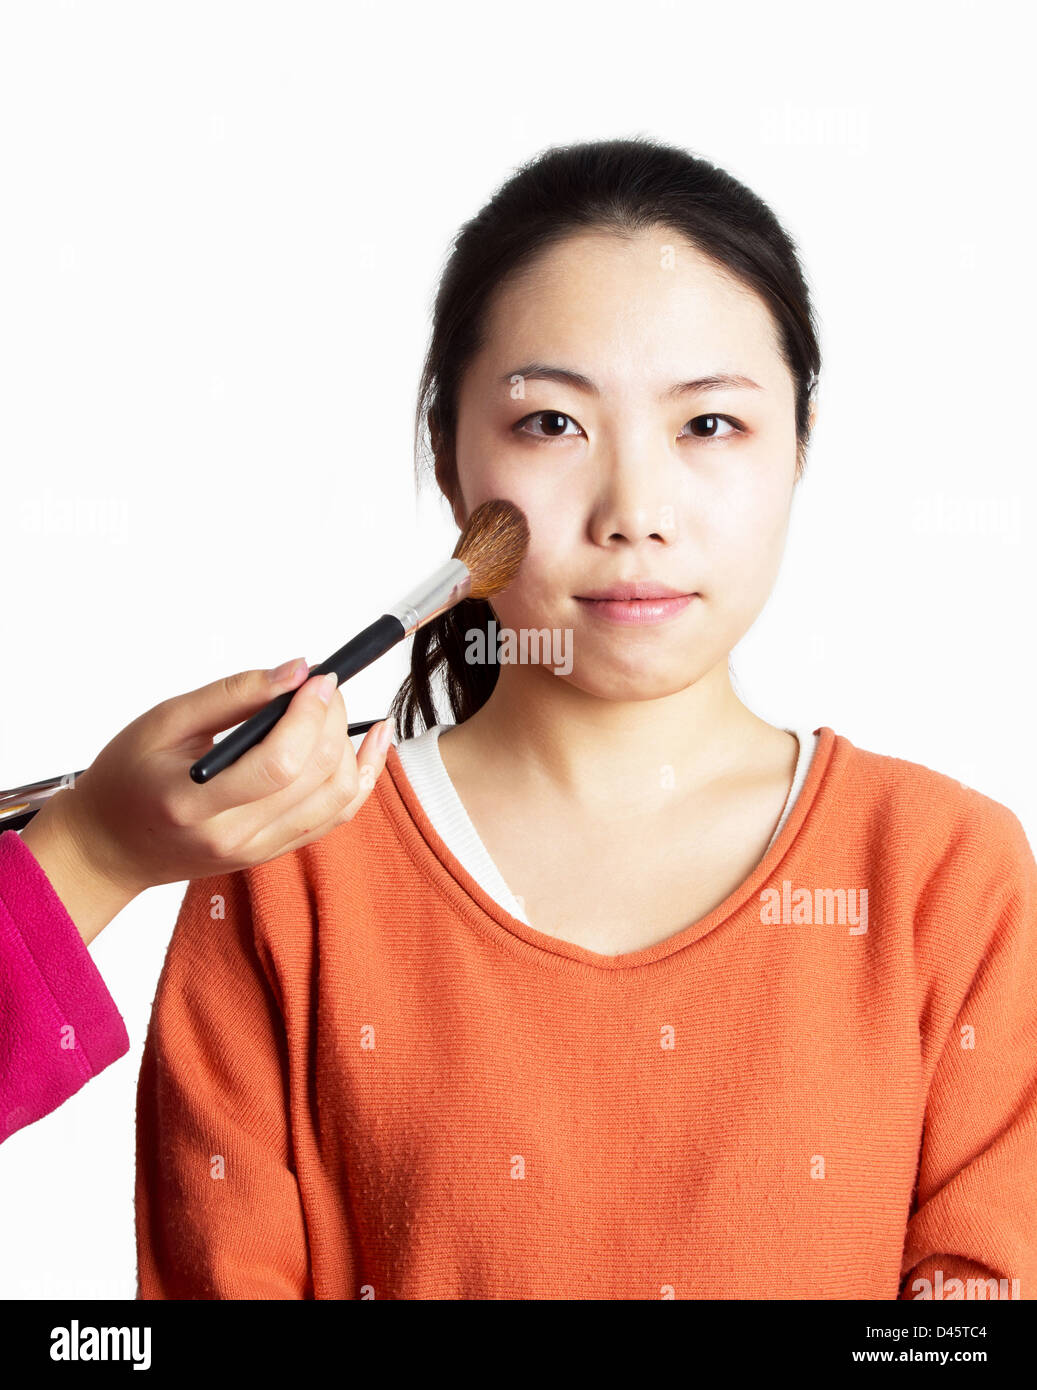 Asiatische Frau, die Röte, die durch eine Kosmetikerin angewendet Stockfoto